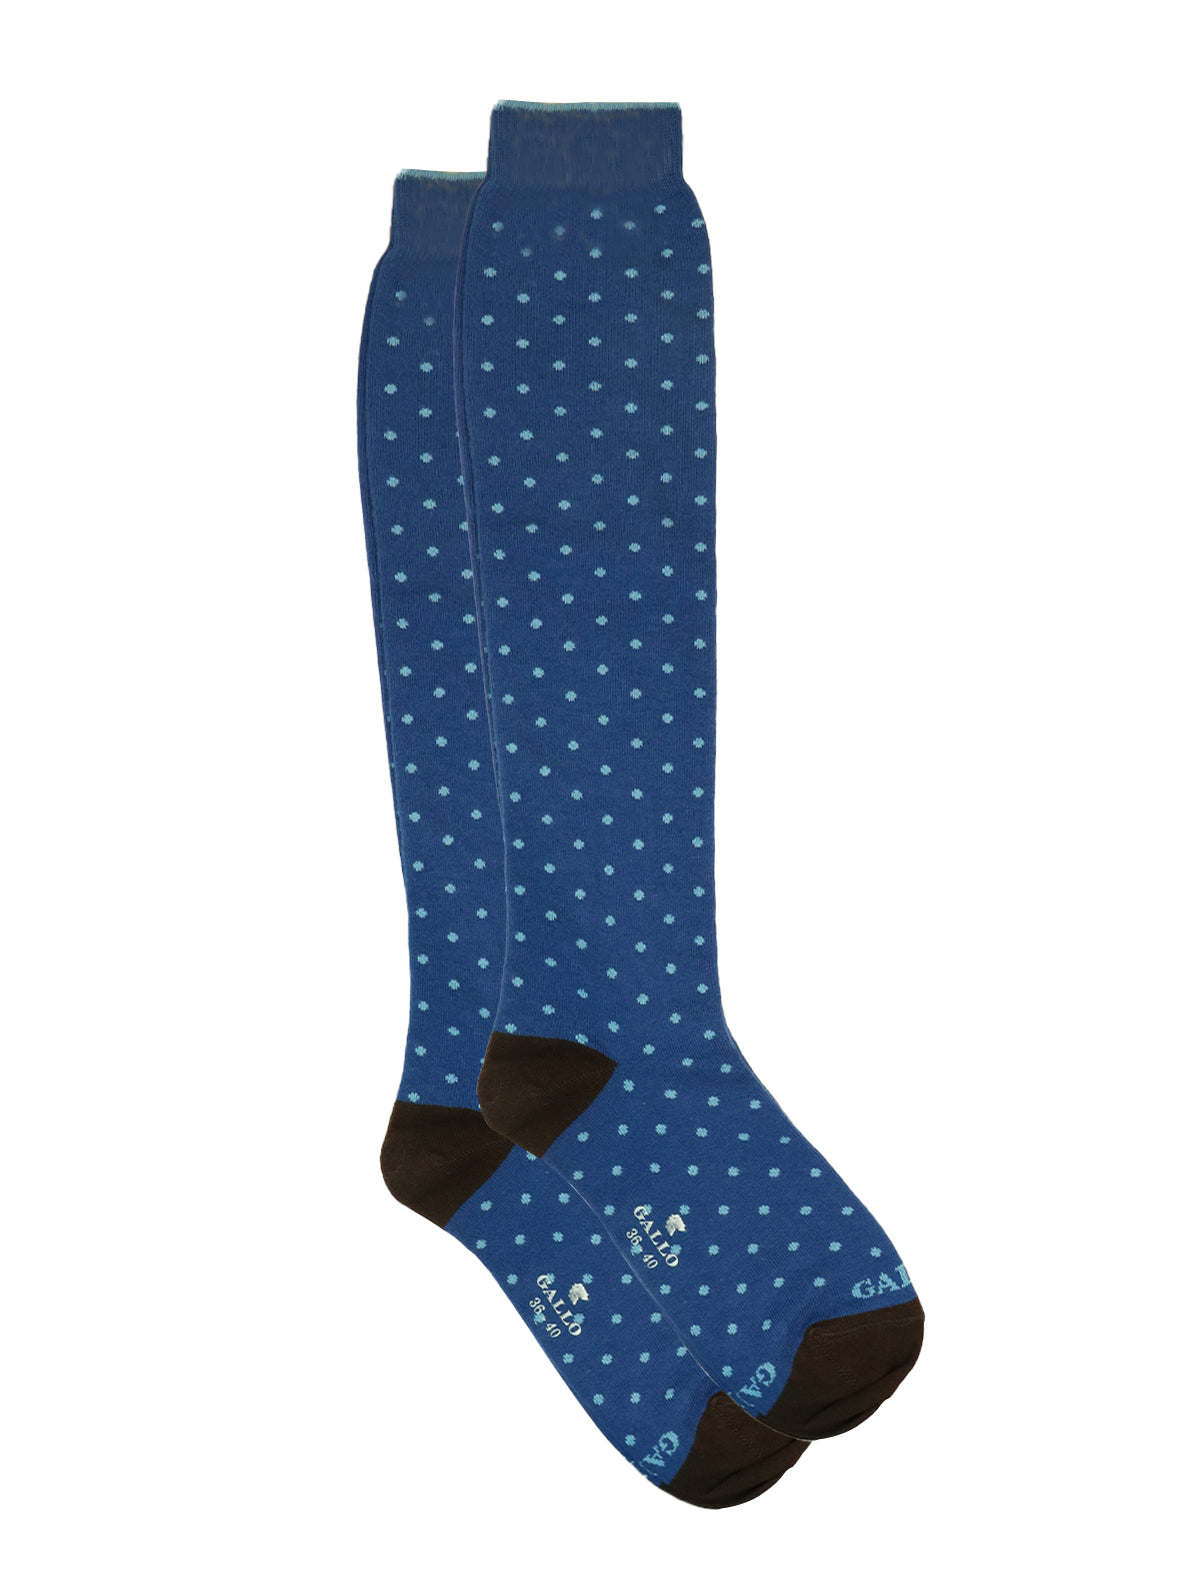 Gallo Long Socks in Blue Polka Dot Print